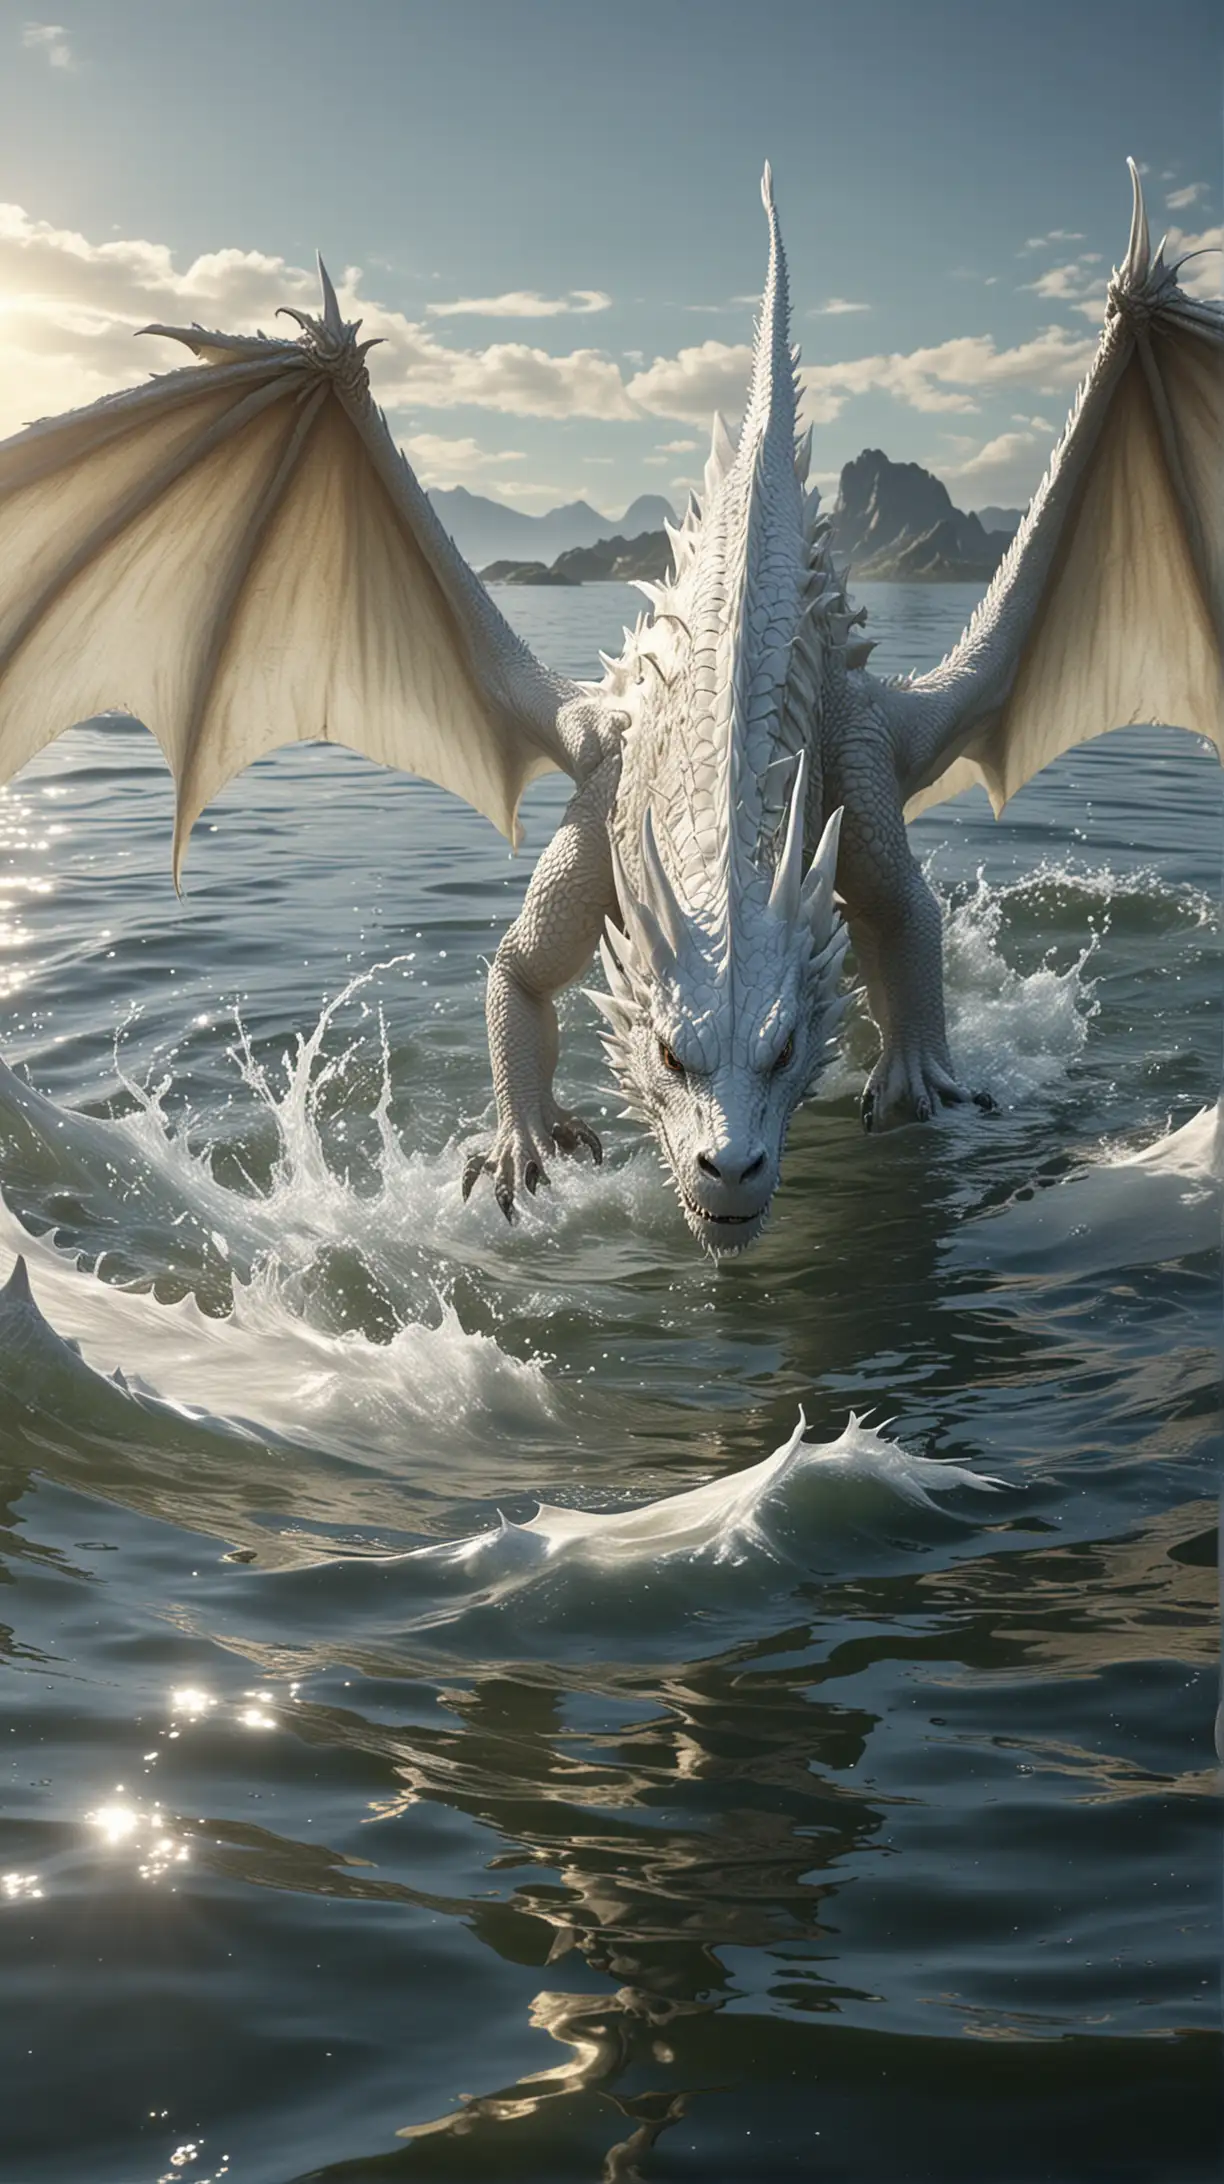 Un grand dragon blanc, dans l'eau, captivant, au zenith du soleil, hyperréaliste de haute qualité, 8K Ultra HD.